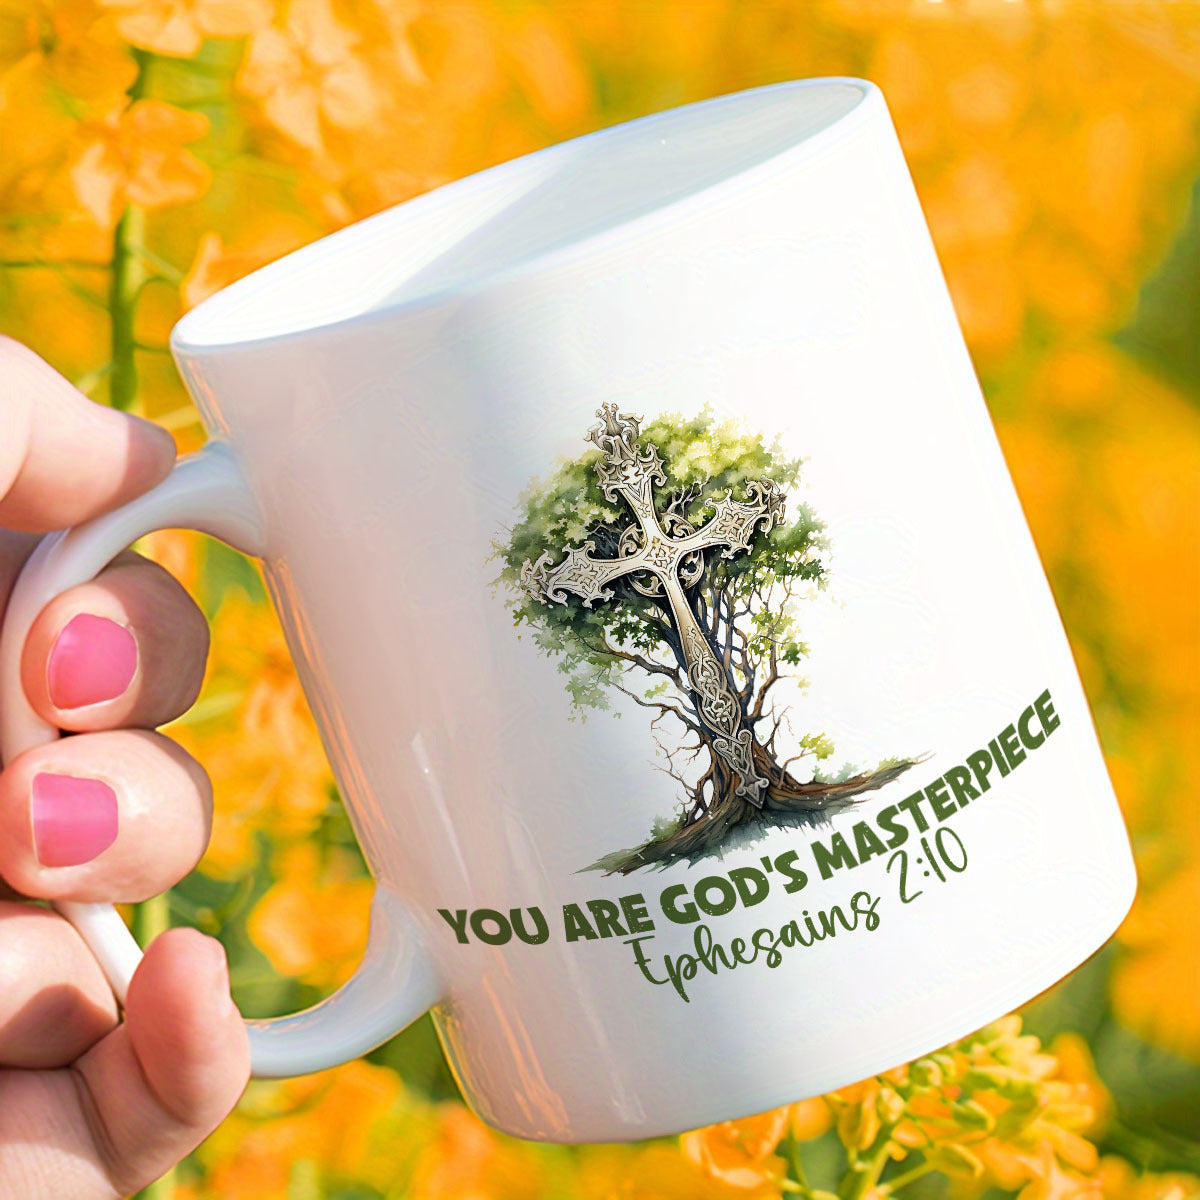 You Are God's Masterpiece Christian White Ceramic Mug, 11oz claimedbygoddesigns